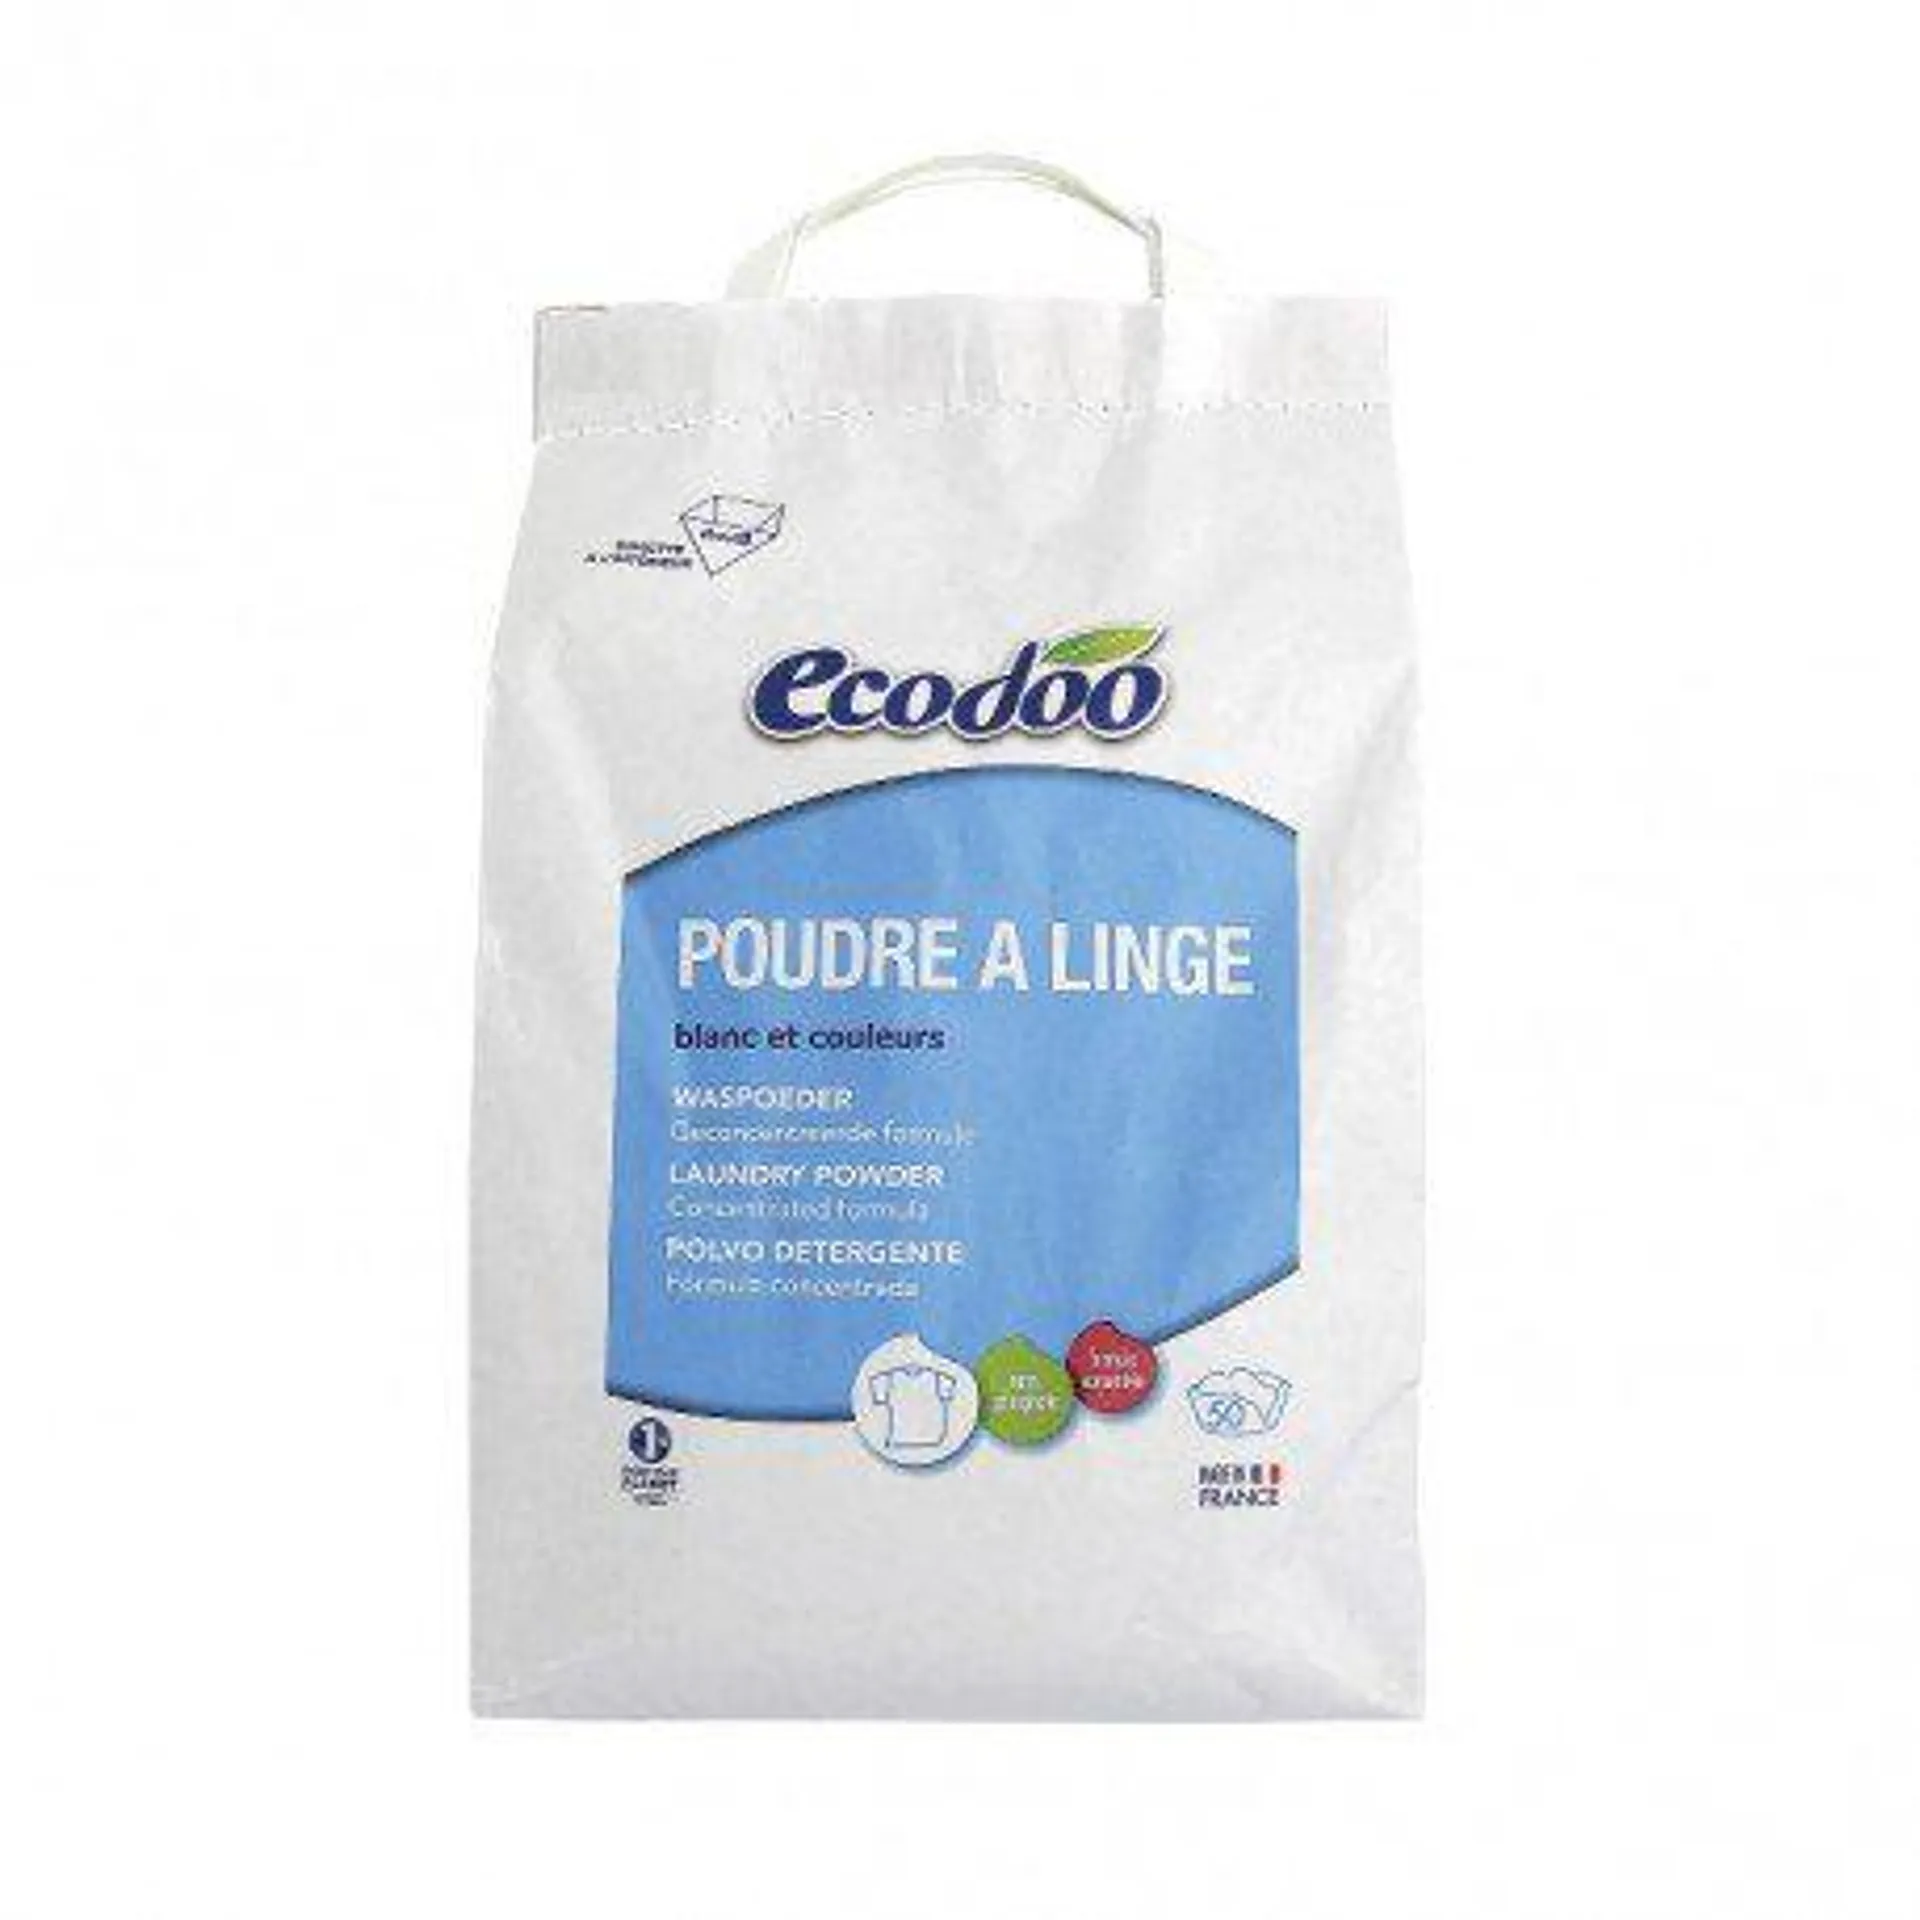 Detergente concentrado en polvo (3kg) – Ecodoo